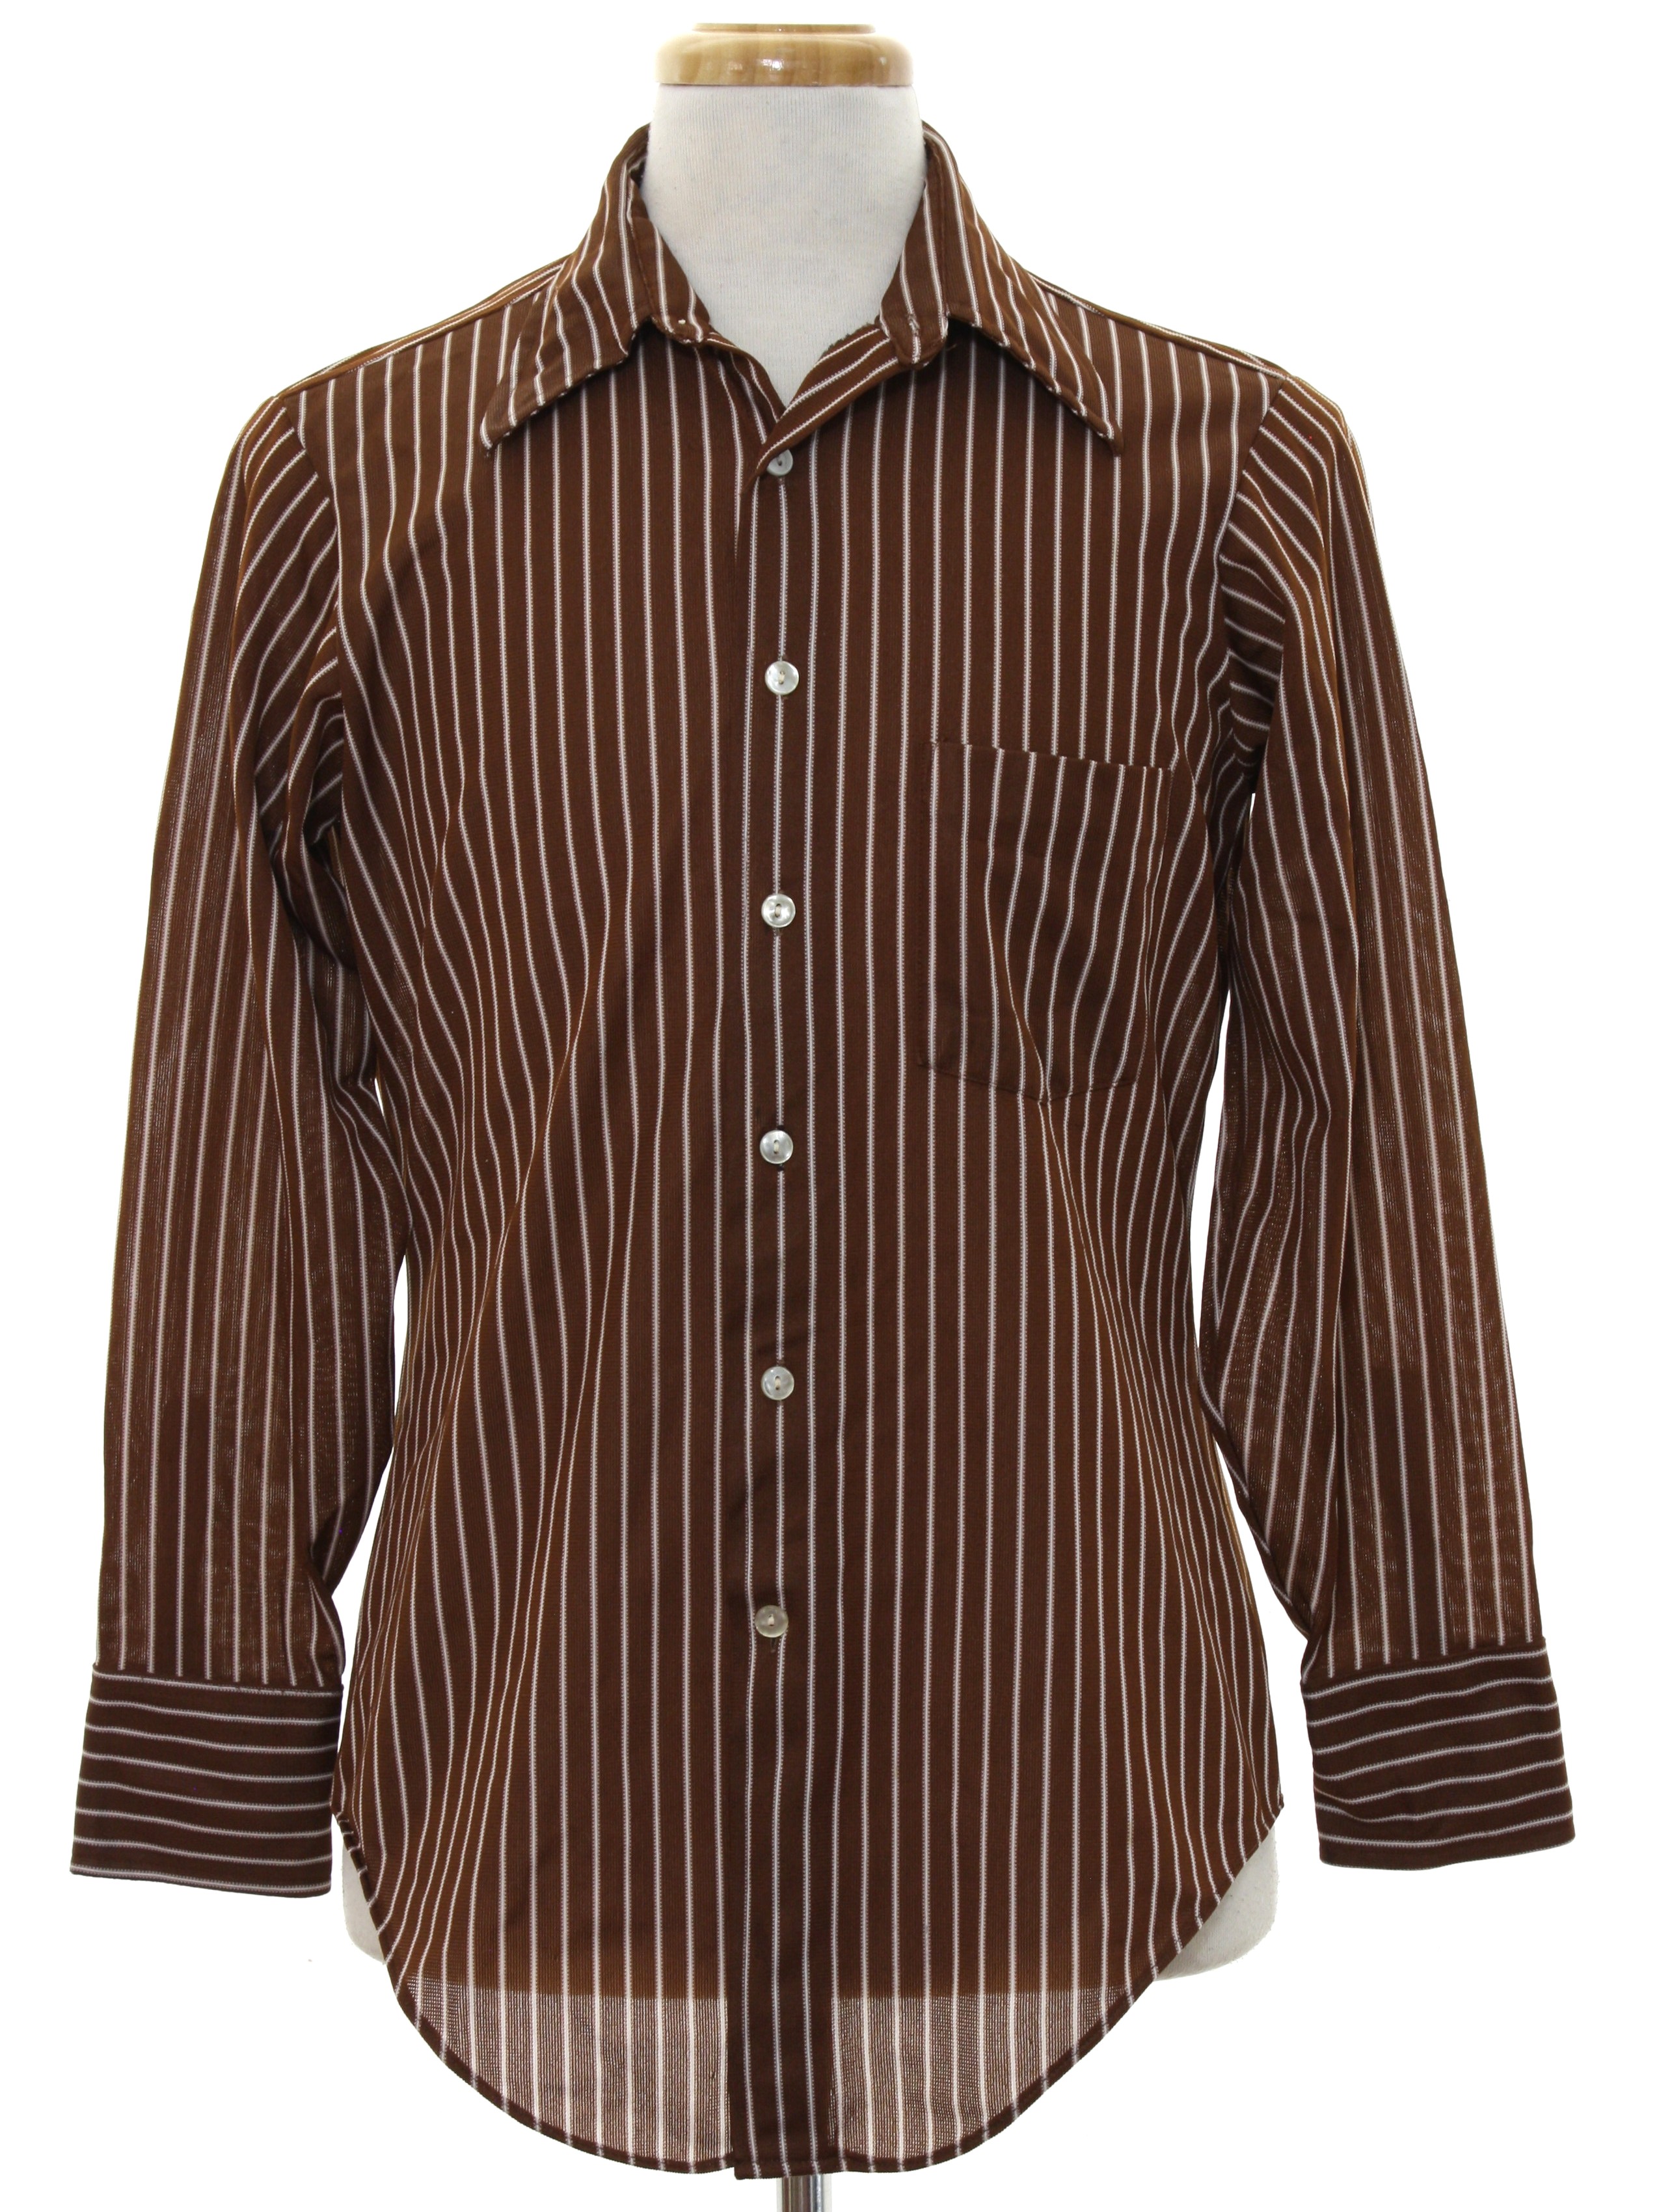 Retro 1970's Print Disco Shirt (Arrow) : 70s -Arrow- Mens dark brown ...